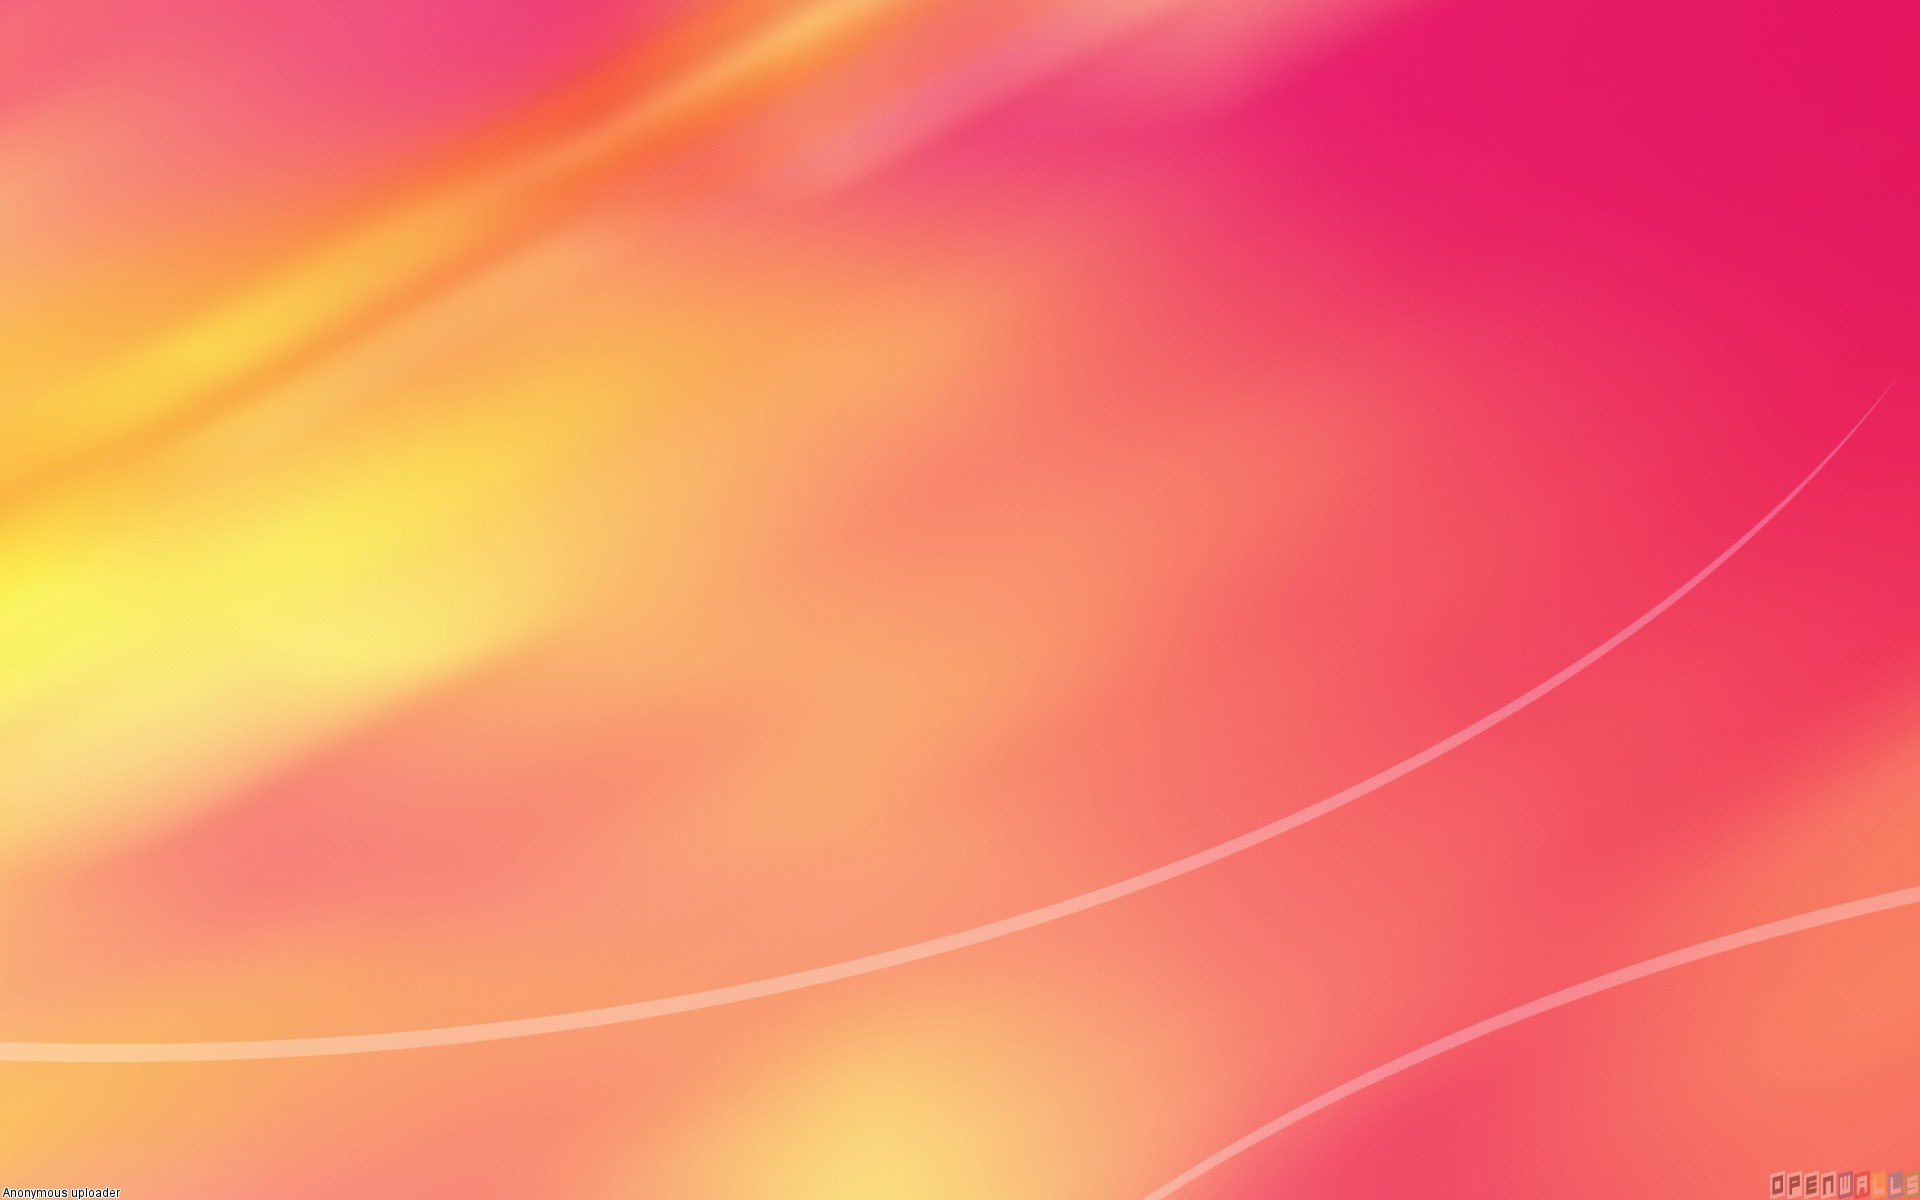 Pink and Orange Wallpaper - WallpaperSafari